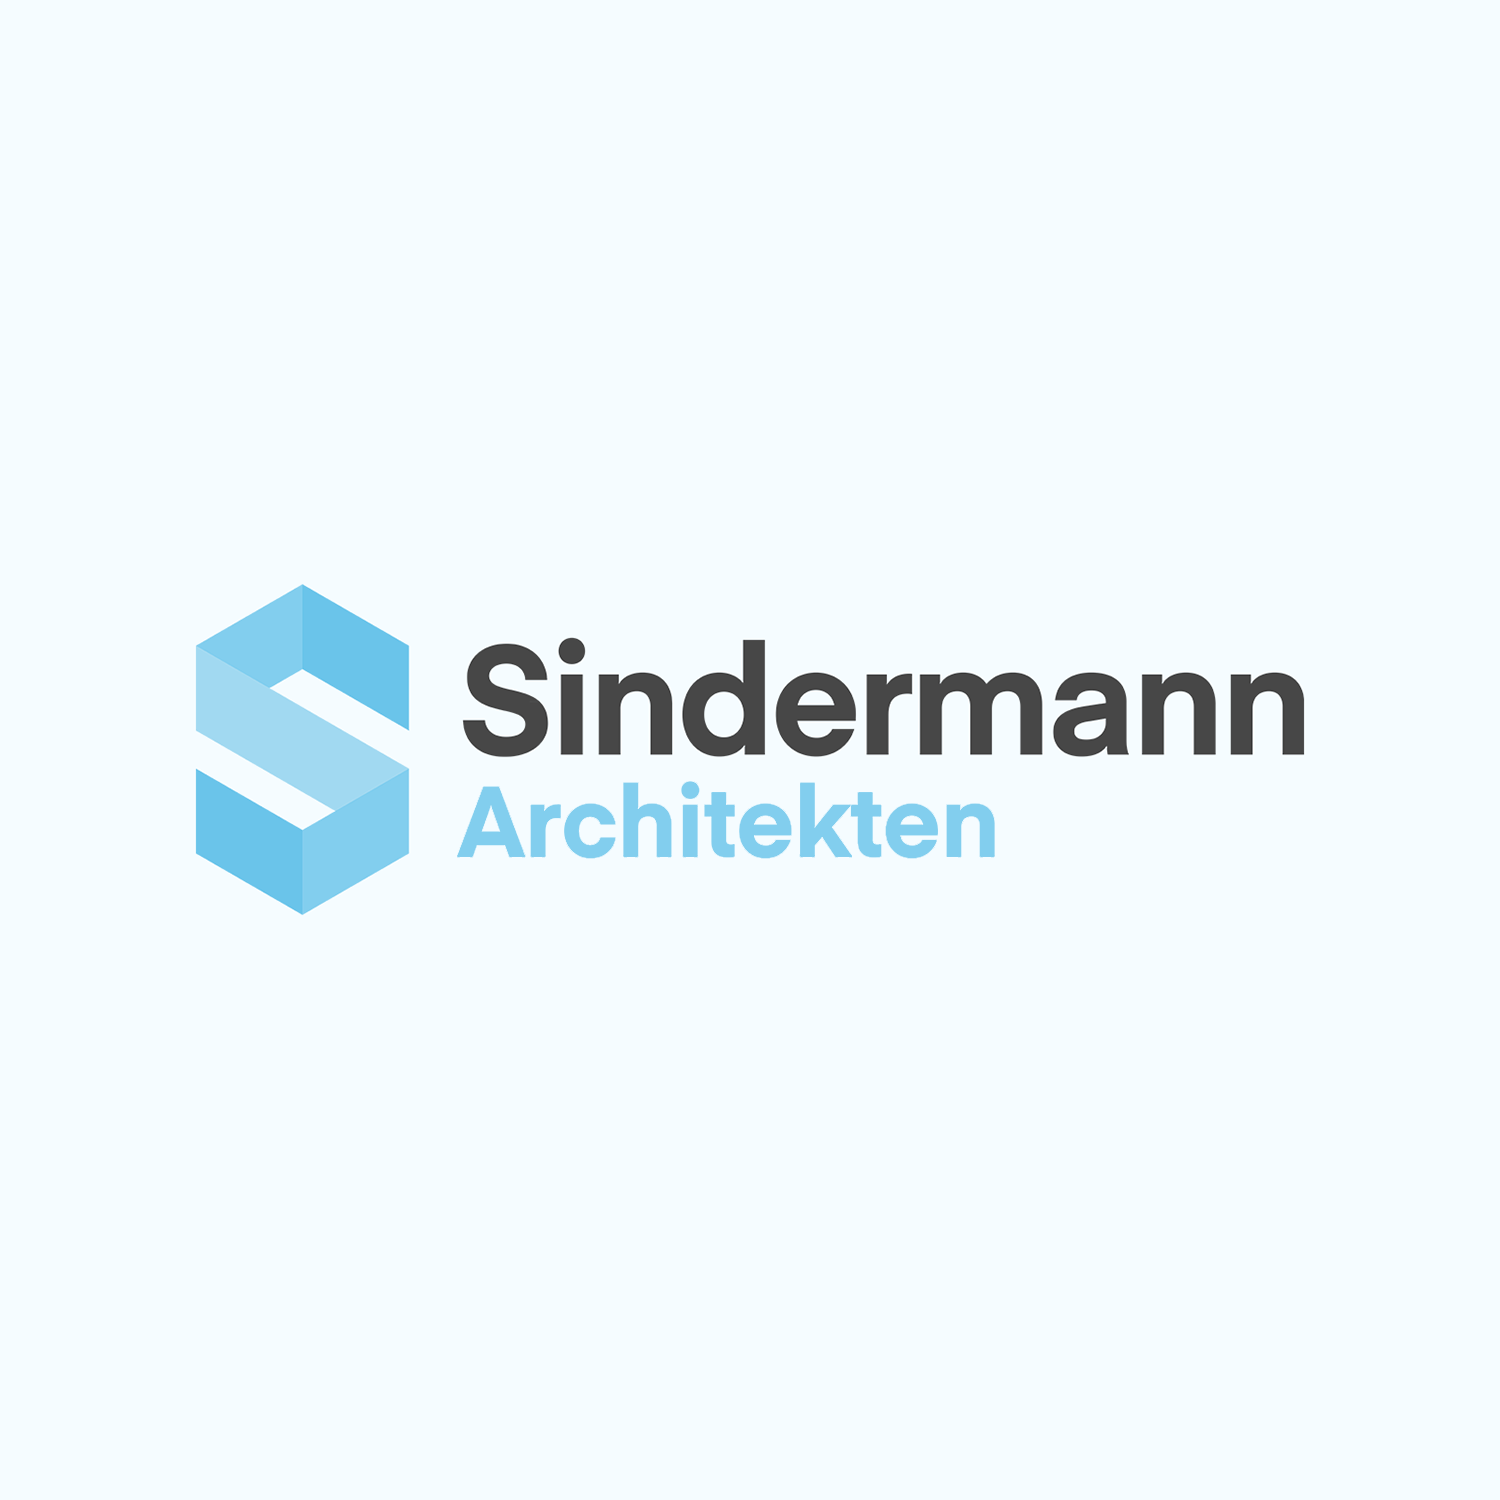 Sindermann Architekten Logo